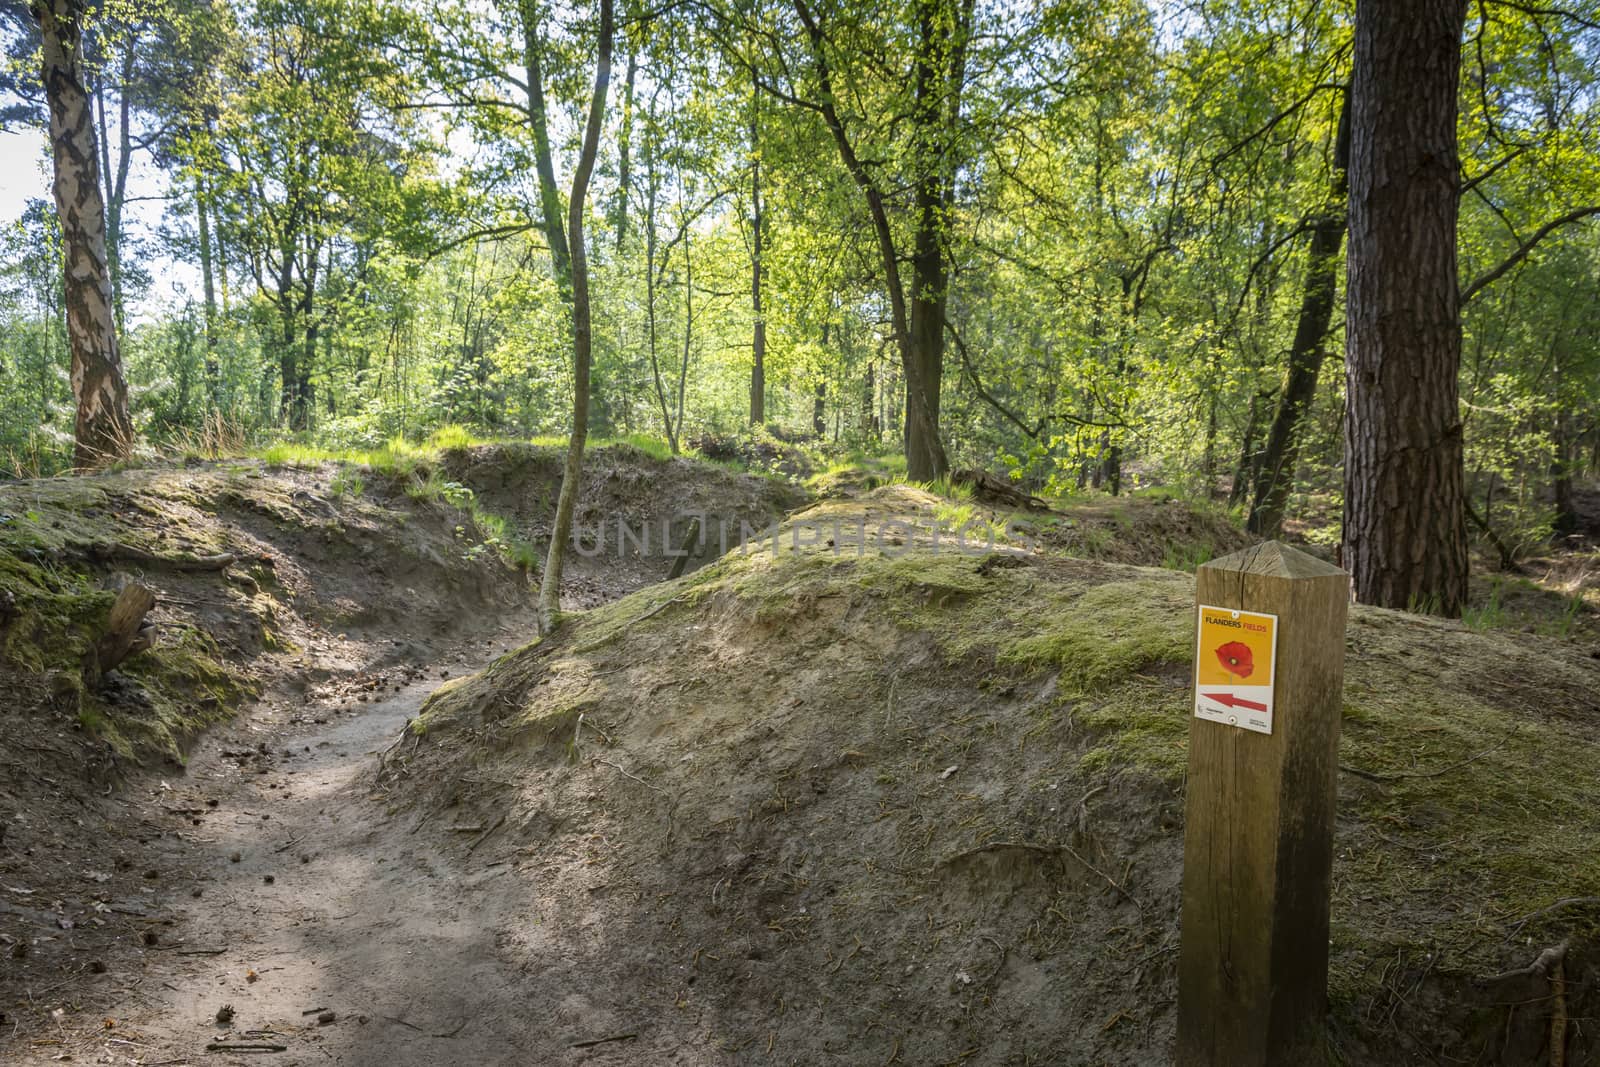 Kapellen, Belgium, April 2020: Loopgravenpad, walkway through trenches, in Mastenbos Kapellen, part of the Flanders Fields